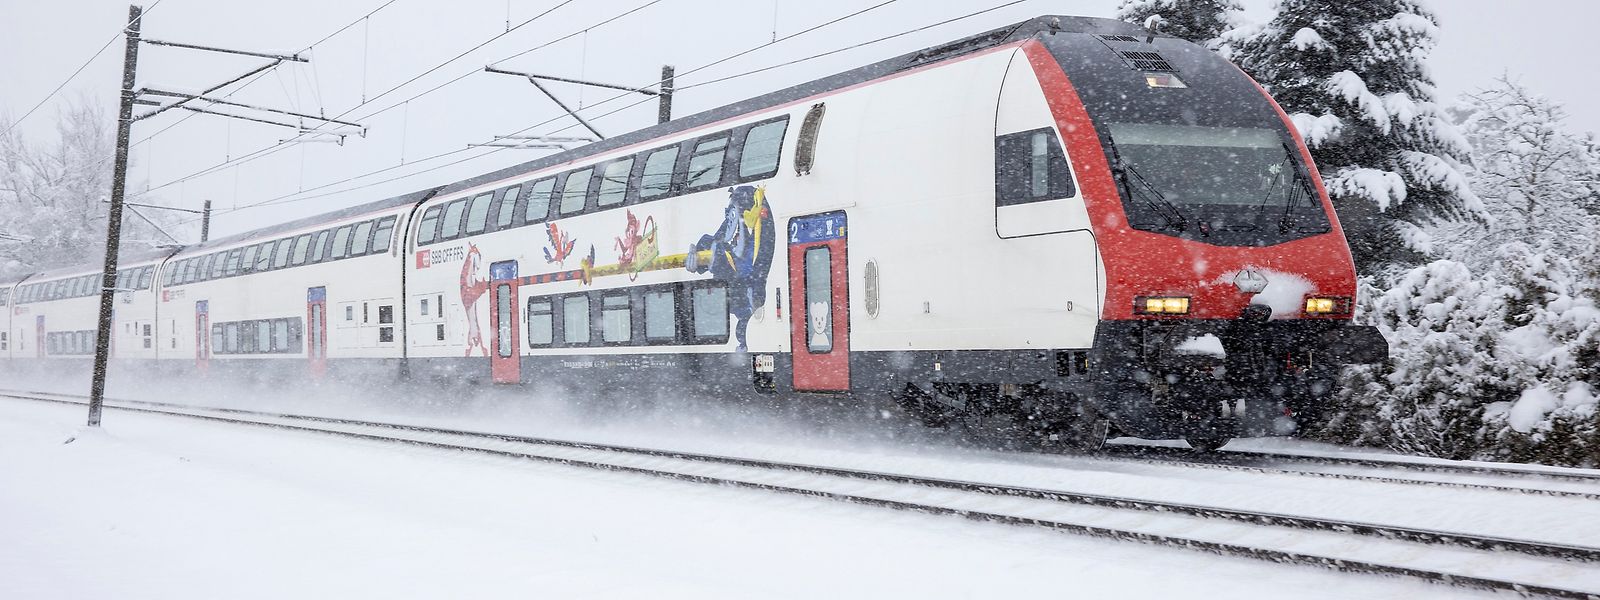 Auch für Winterwetter ist die Schweizer Bahn ausgerüstet. Das Foto zeigt einen IC-2000.